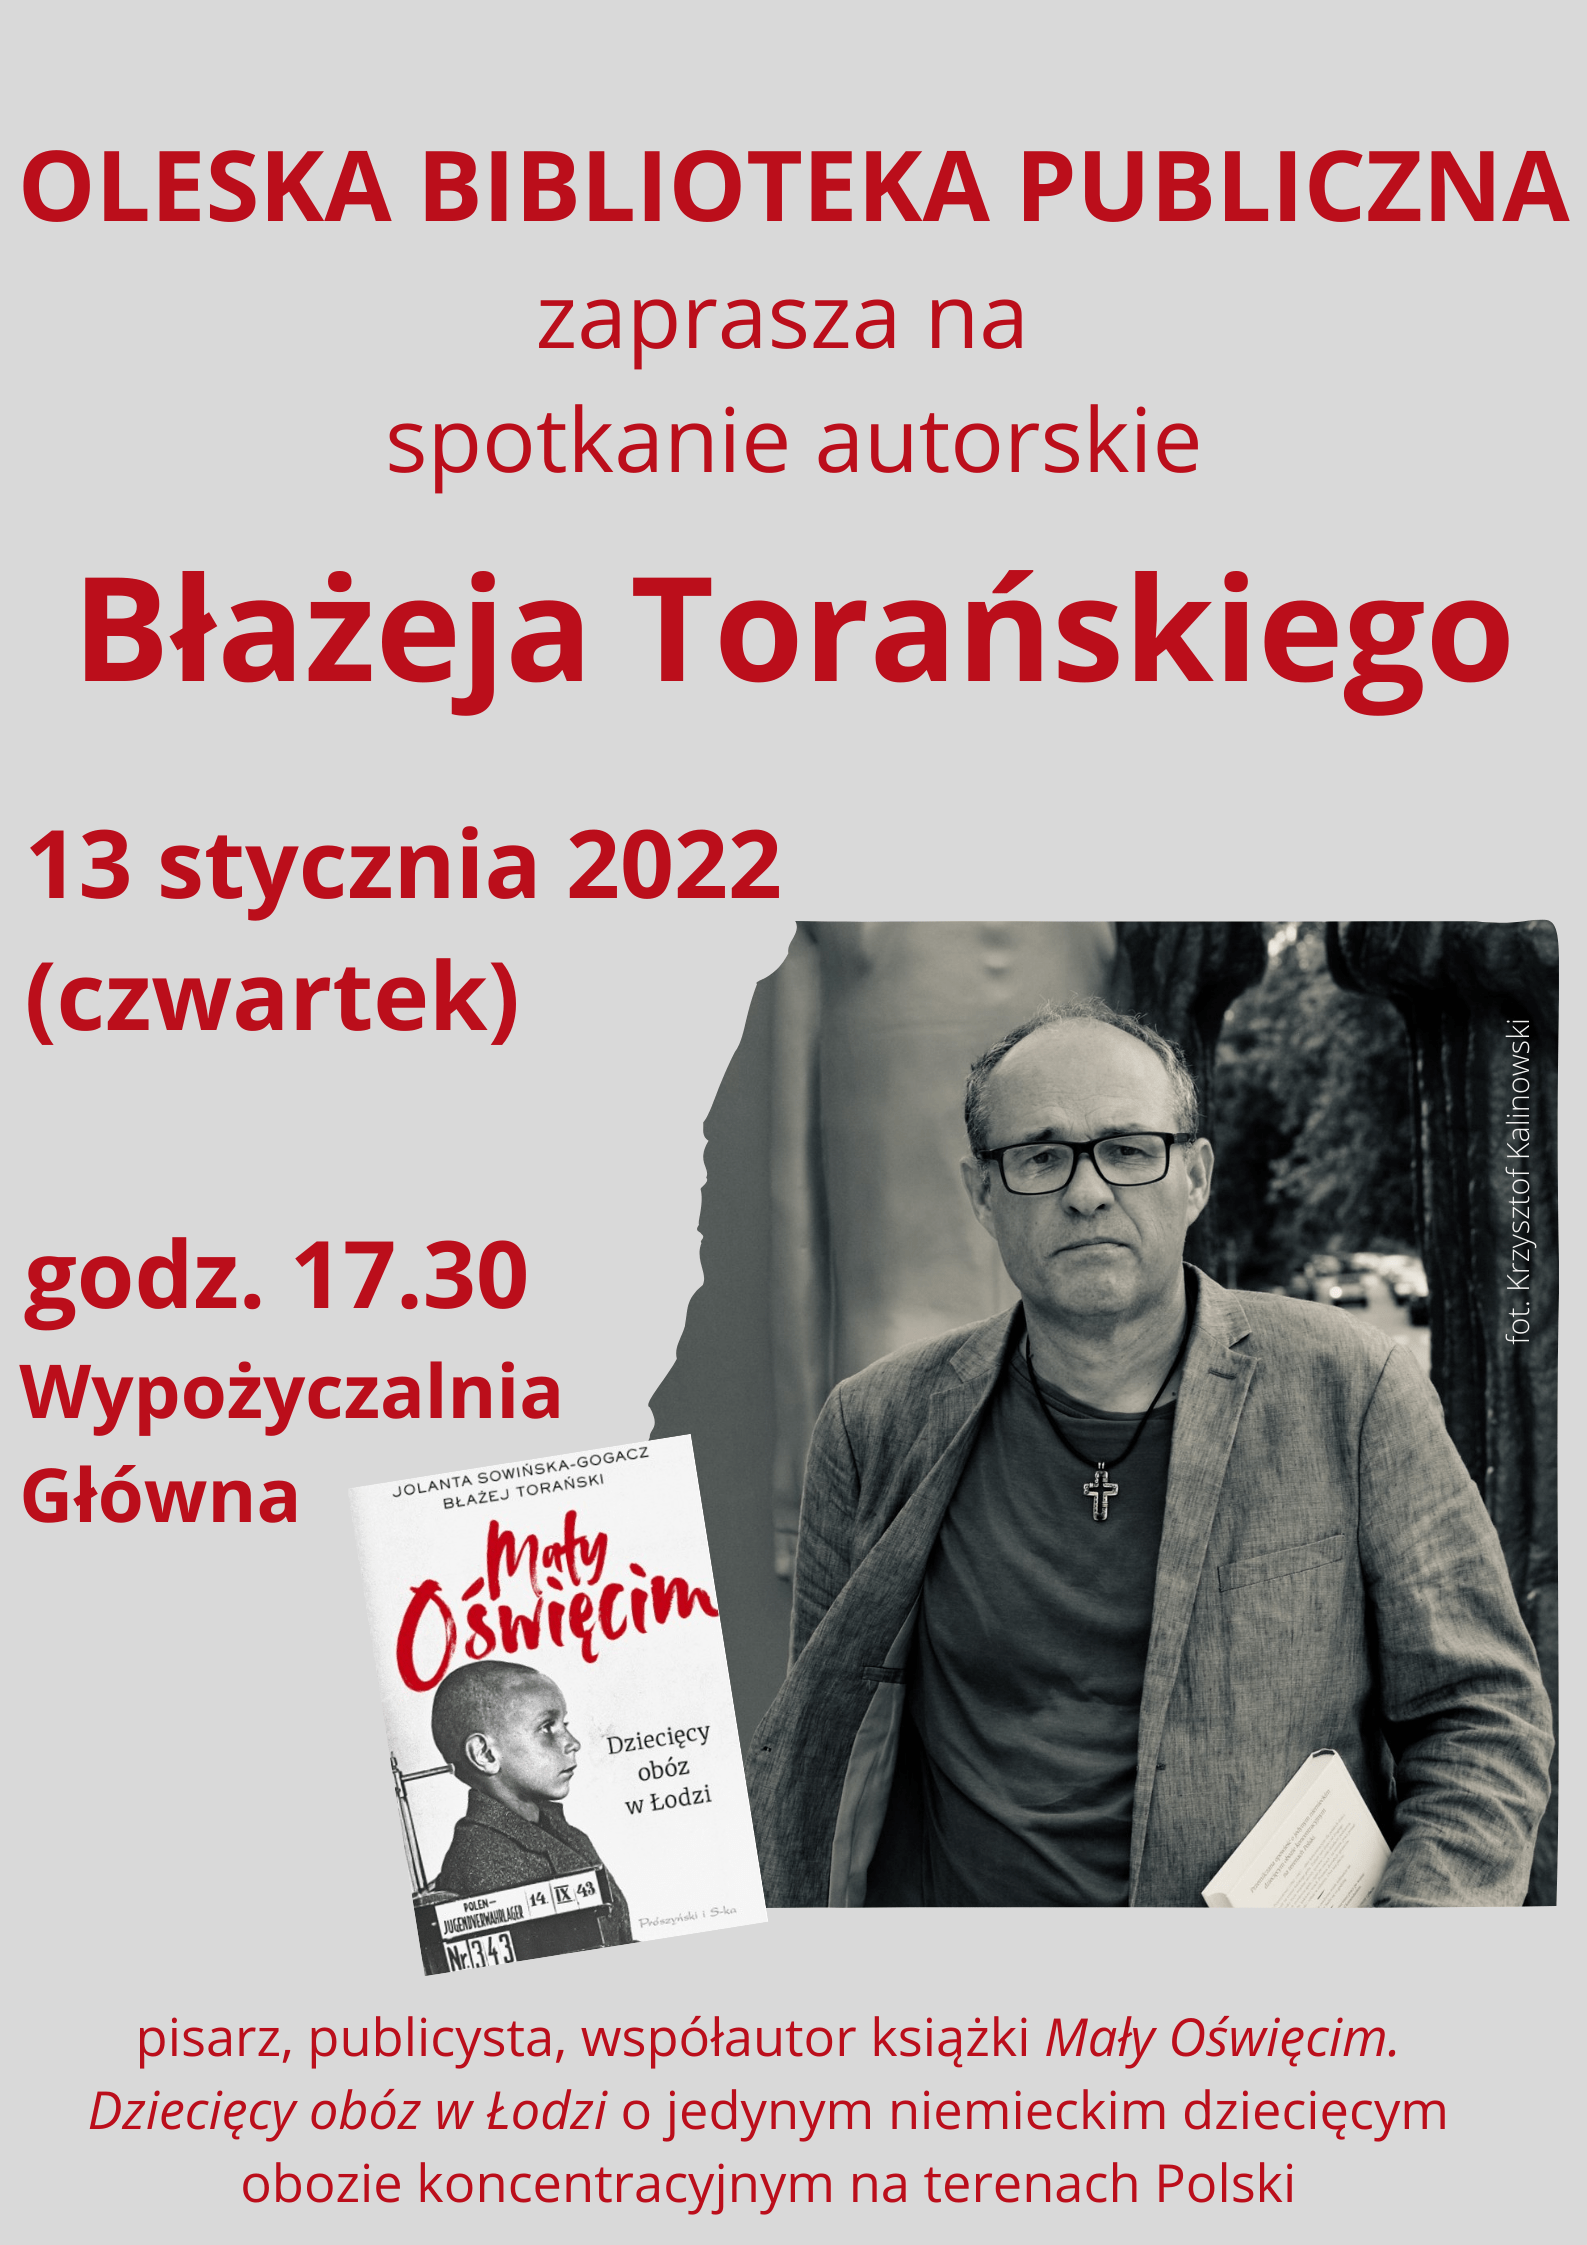 ŚRODA, 12 STYCZNIA 2022 o 17:30 - spotkanie autorskie z Błażejem Torańskim, współautorem książki "Mały Oświęcim".